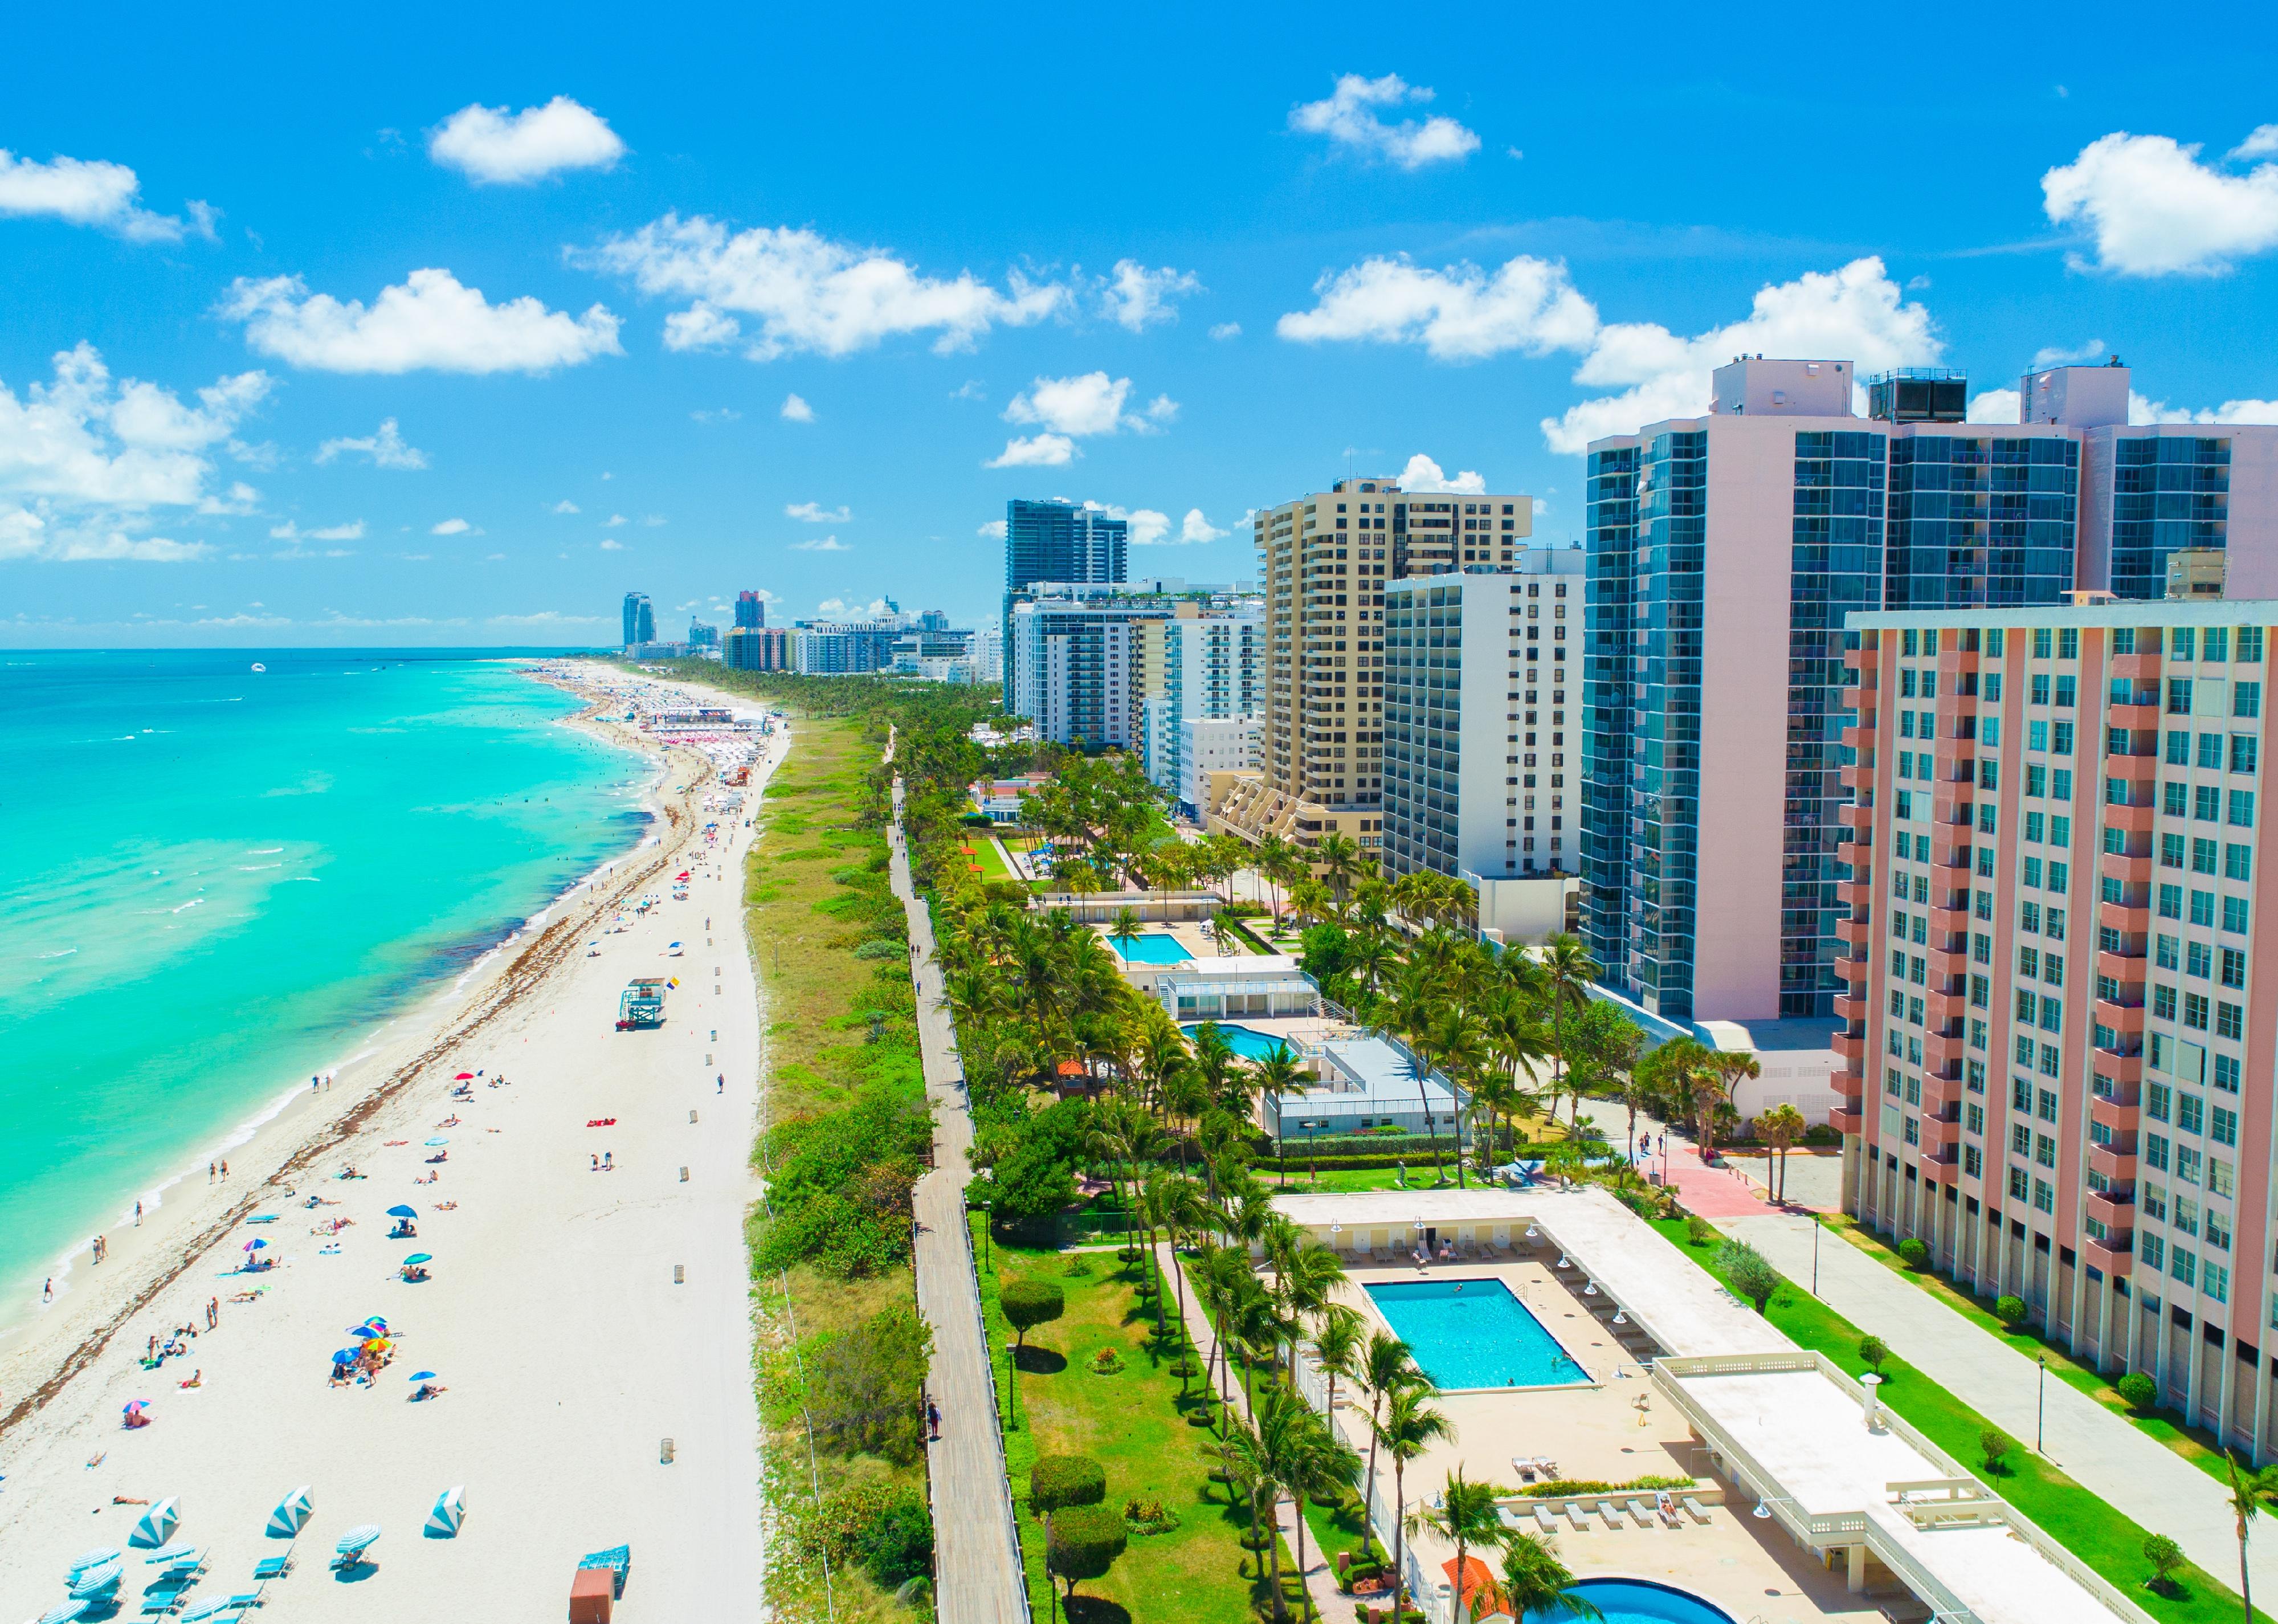 Aerial view of South Beach, Miami Beach